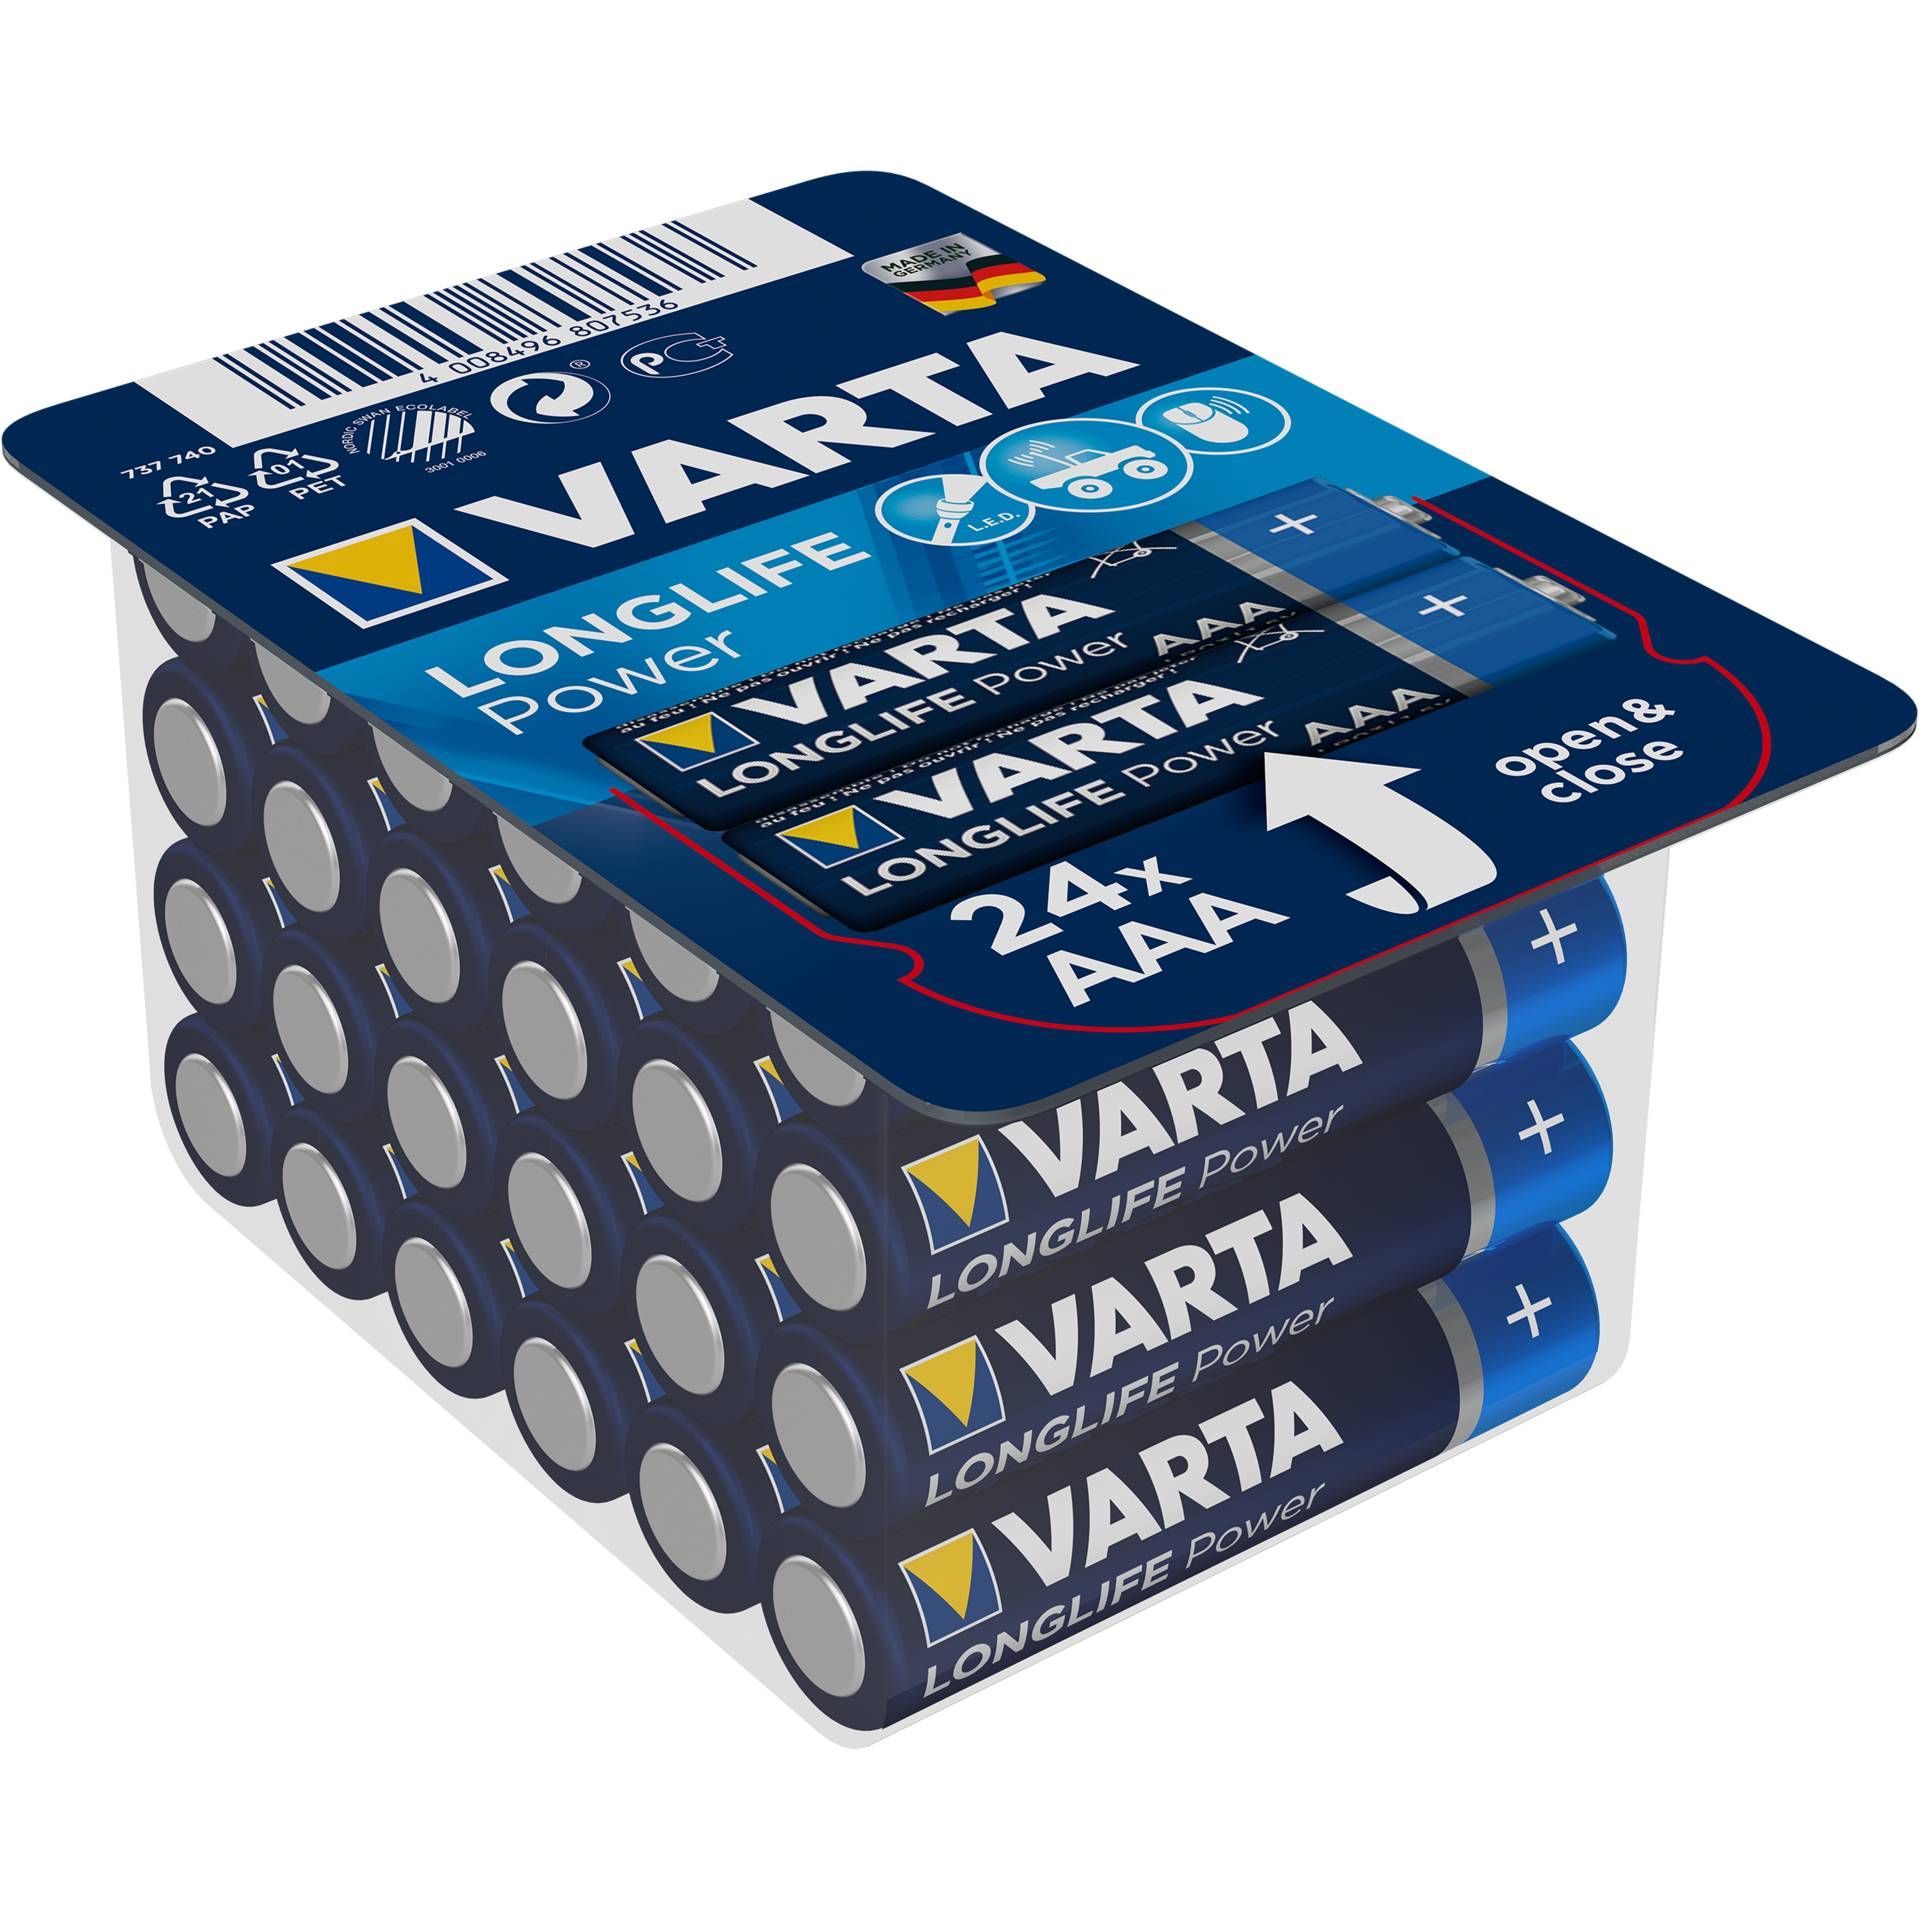 1x24 Varta High Energy AAA LR 3 Ready-To-Sell Tray Big Box